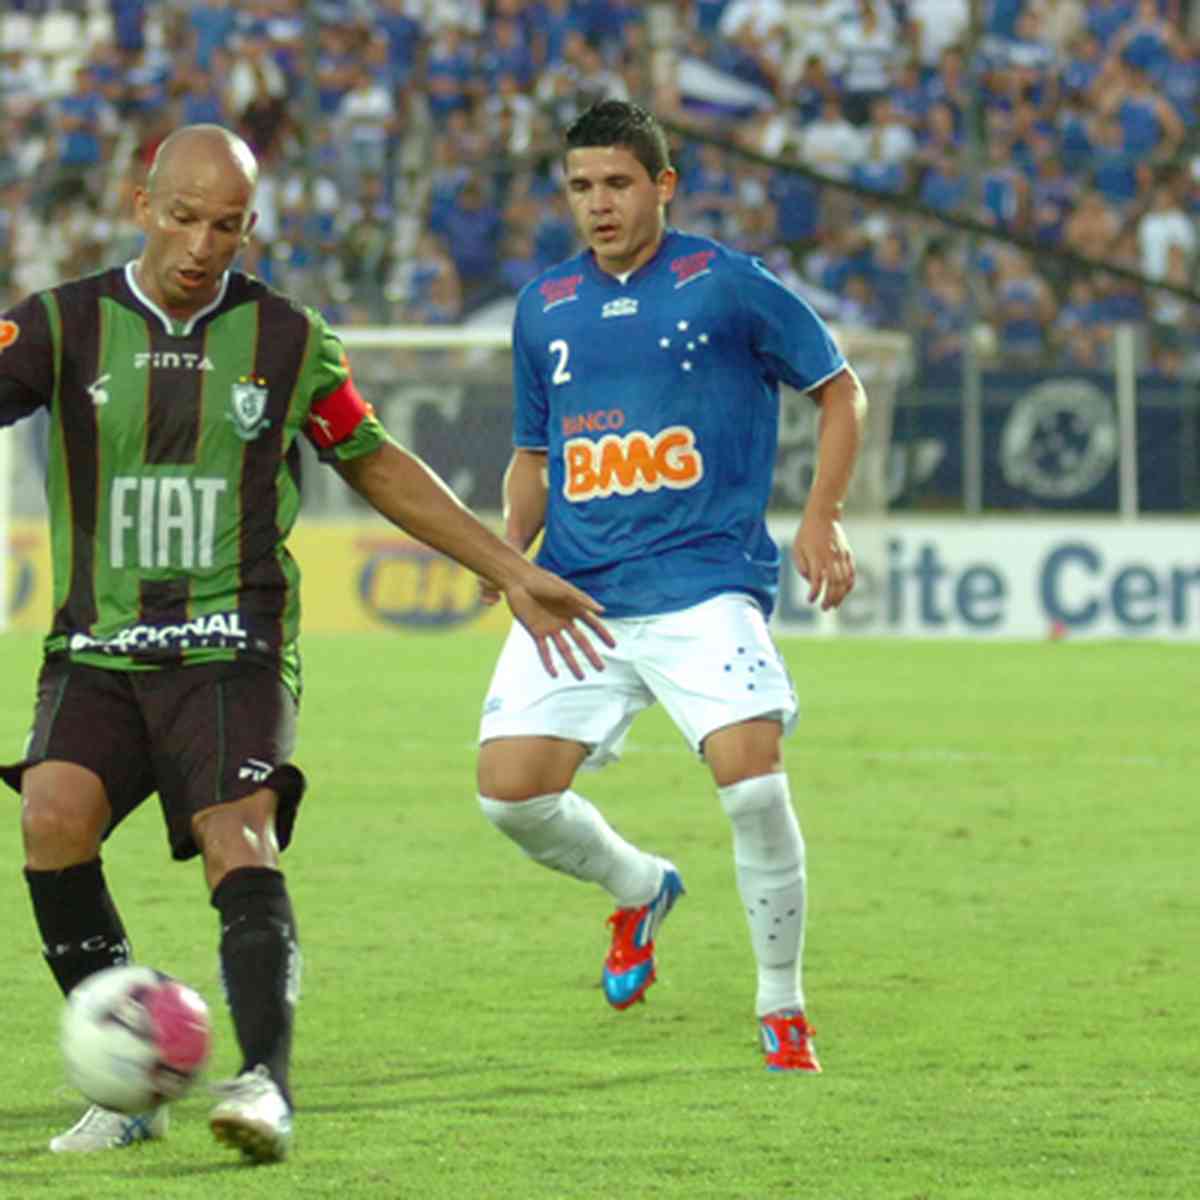 Jogo Cruzeiro x Huracán é reprogramado - CONMEBOL